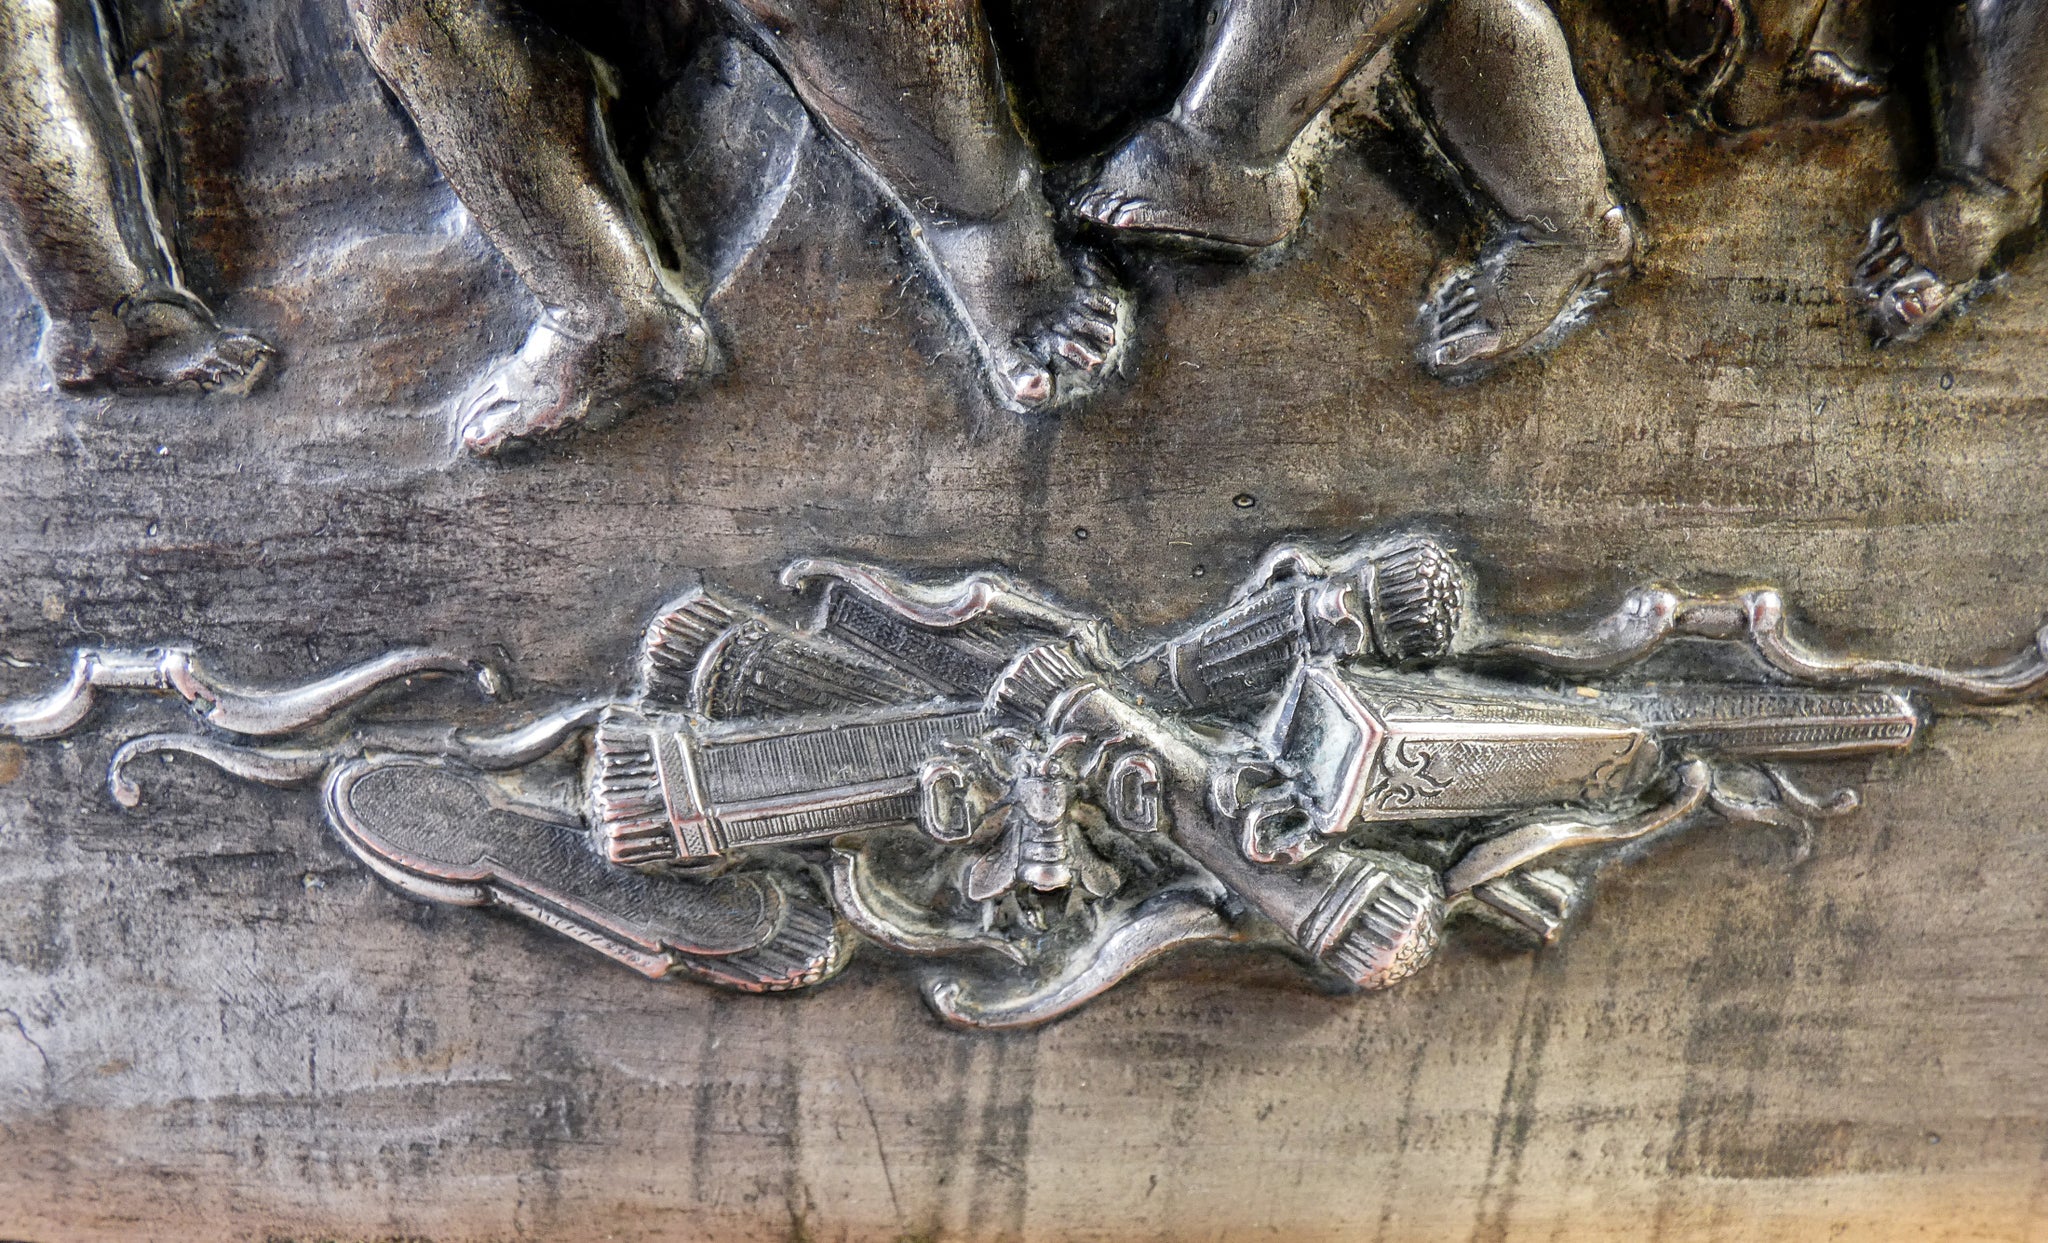 quadro bassorilievo argenteria guido galbiati placcato argento putti angeli